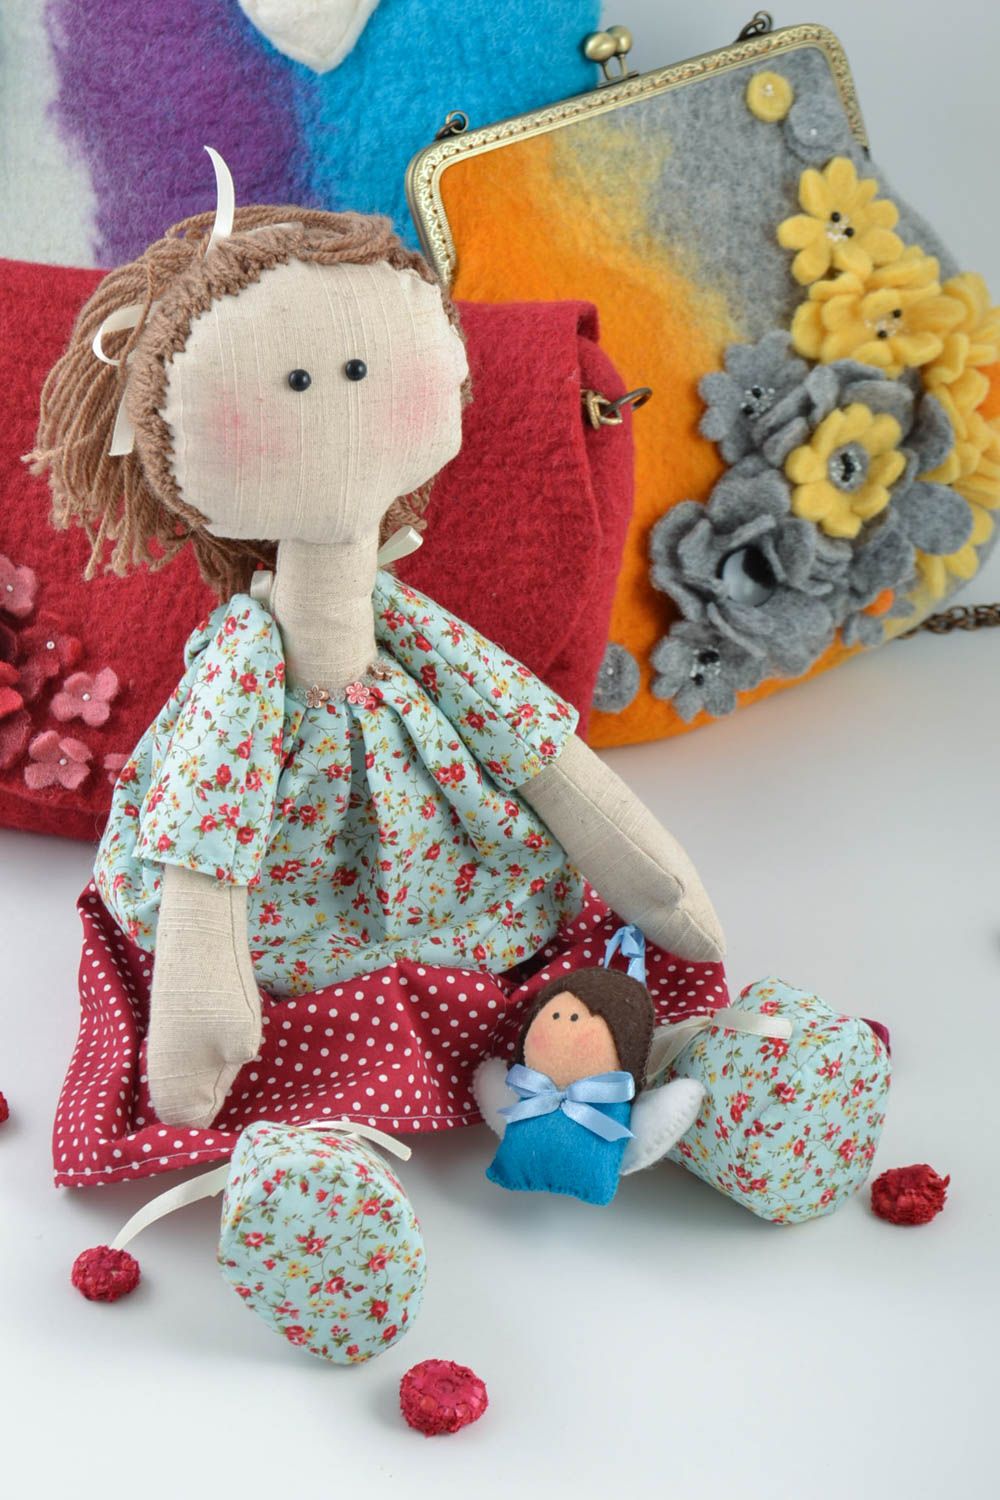 Мягкая игрушка девочка ручной работы из ткани оригинальная для детей и декора фото 1